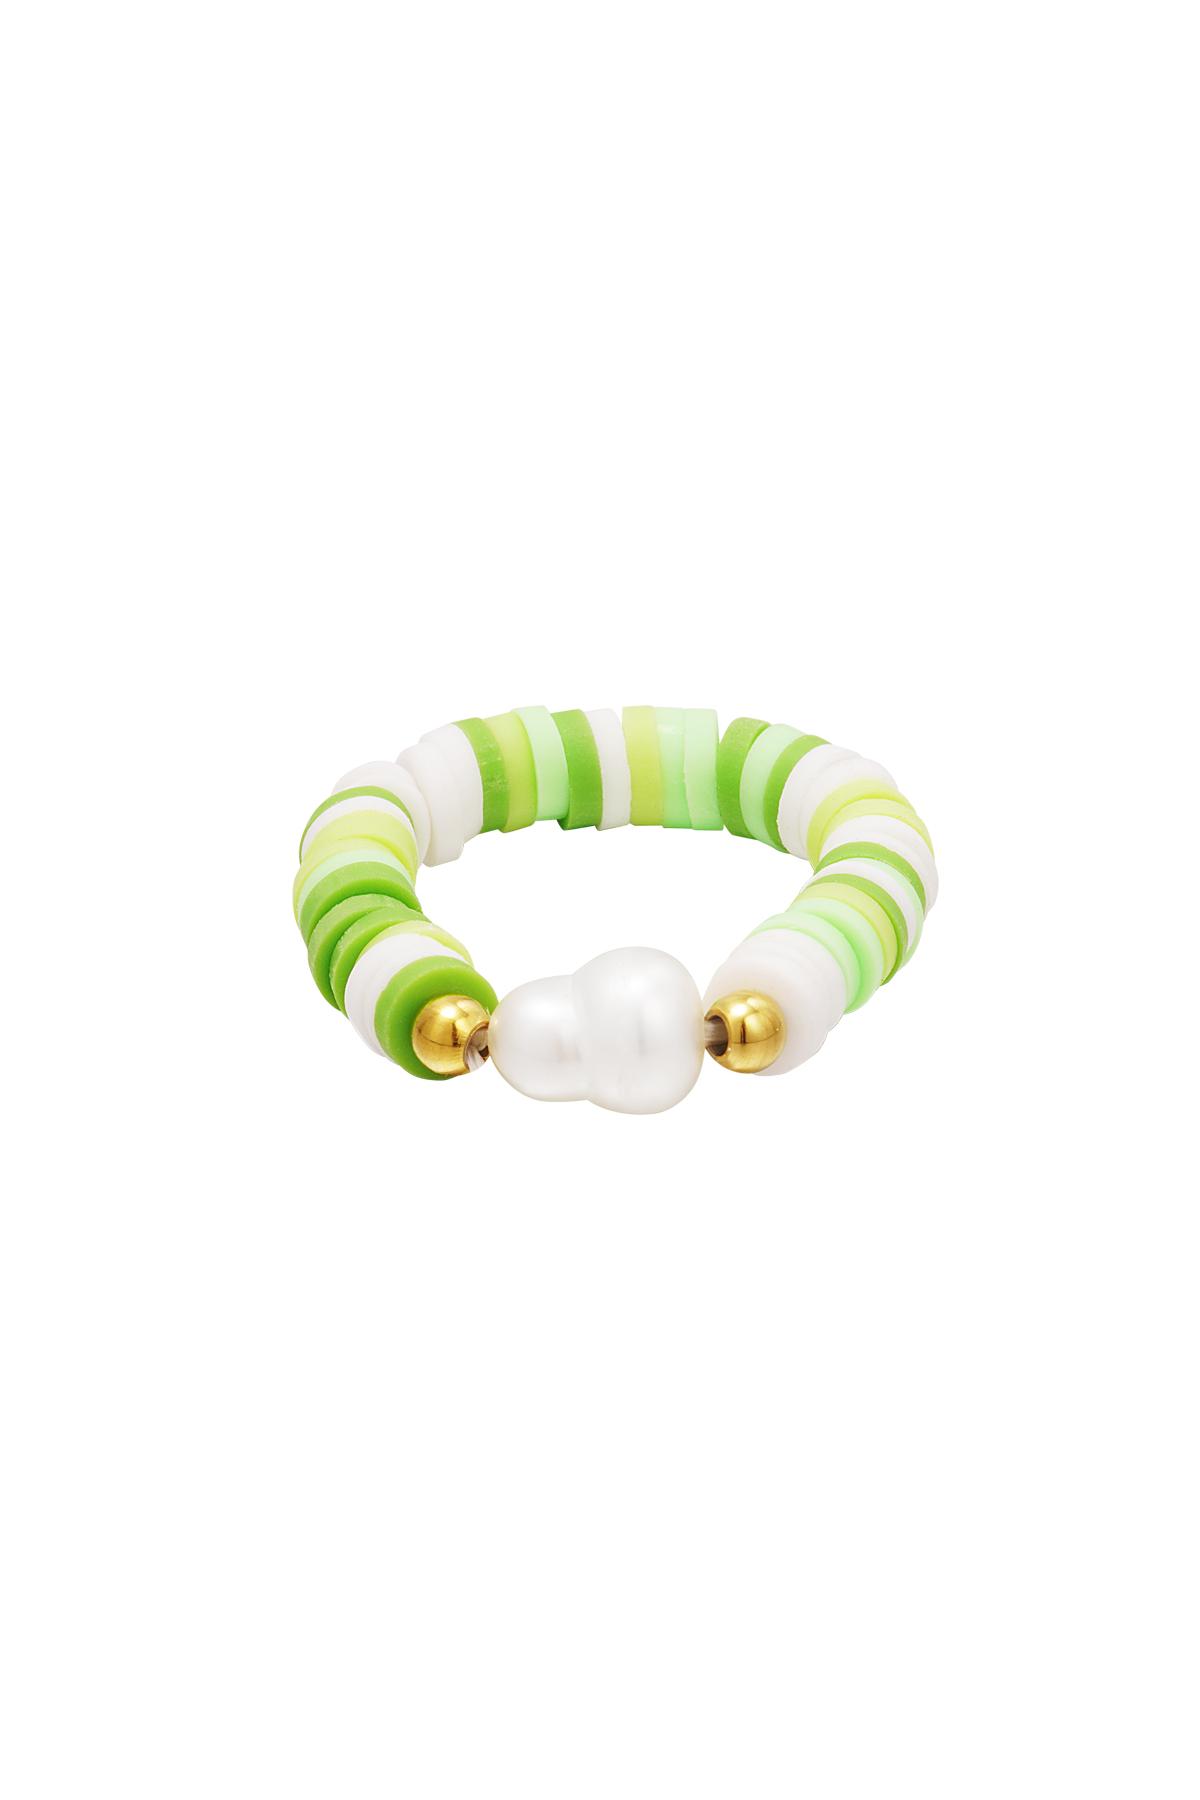 Anillo perlas de colores - colección #summergirls Verde polymer clay 17